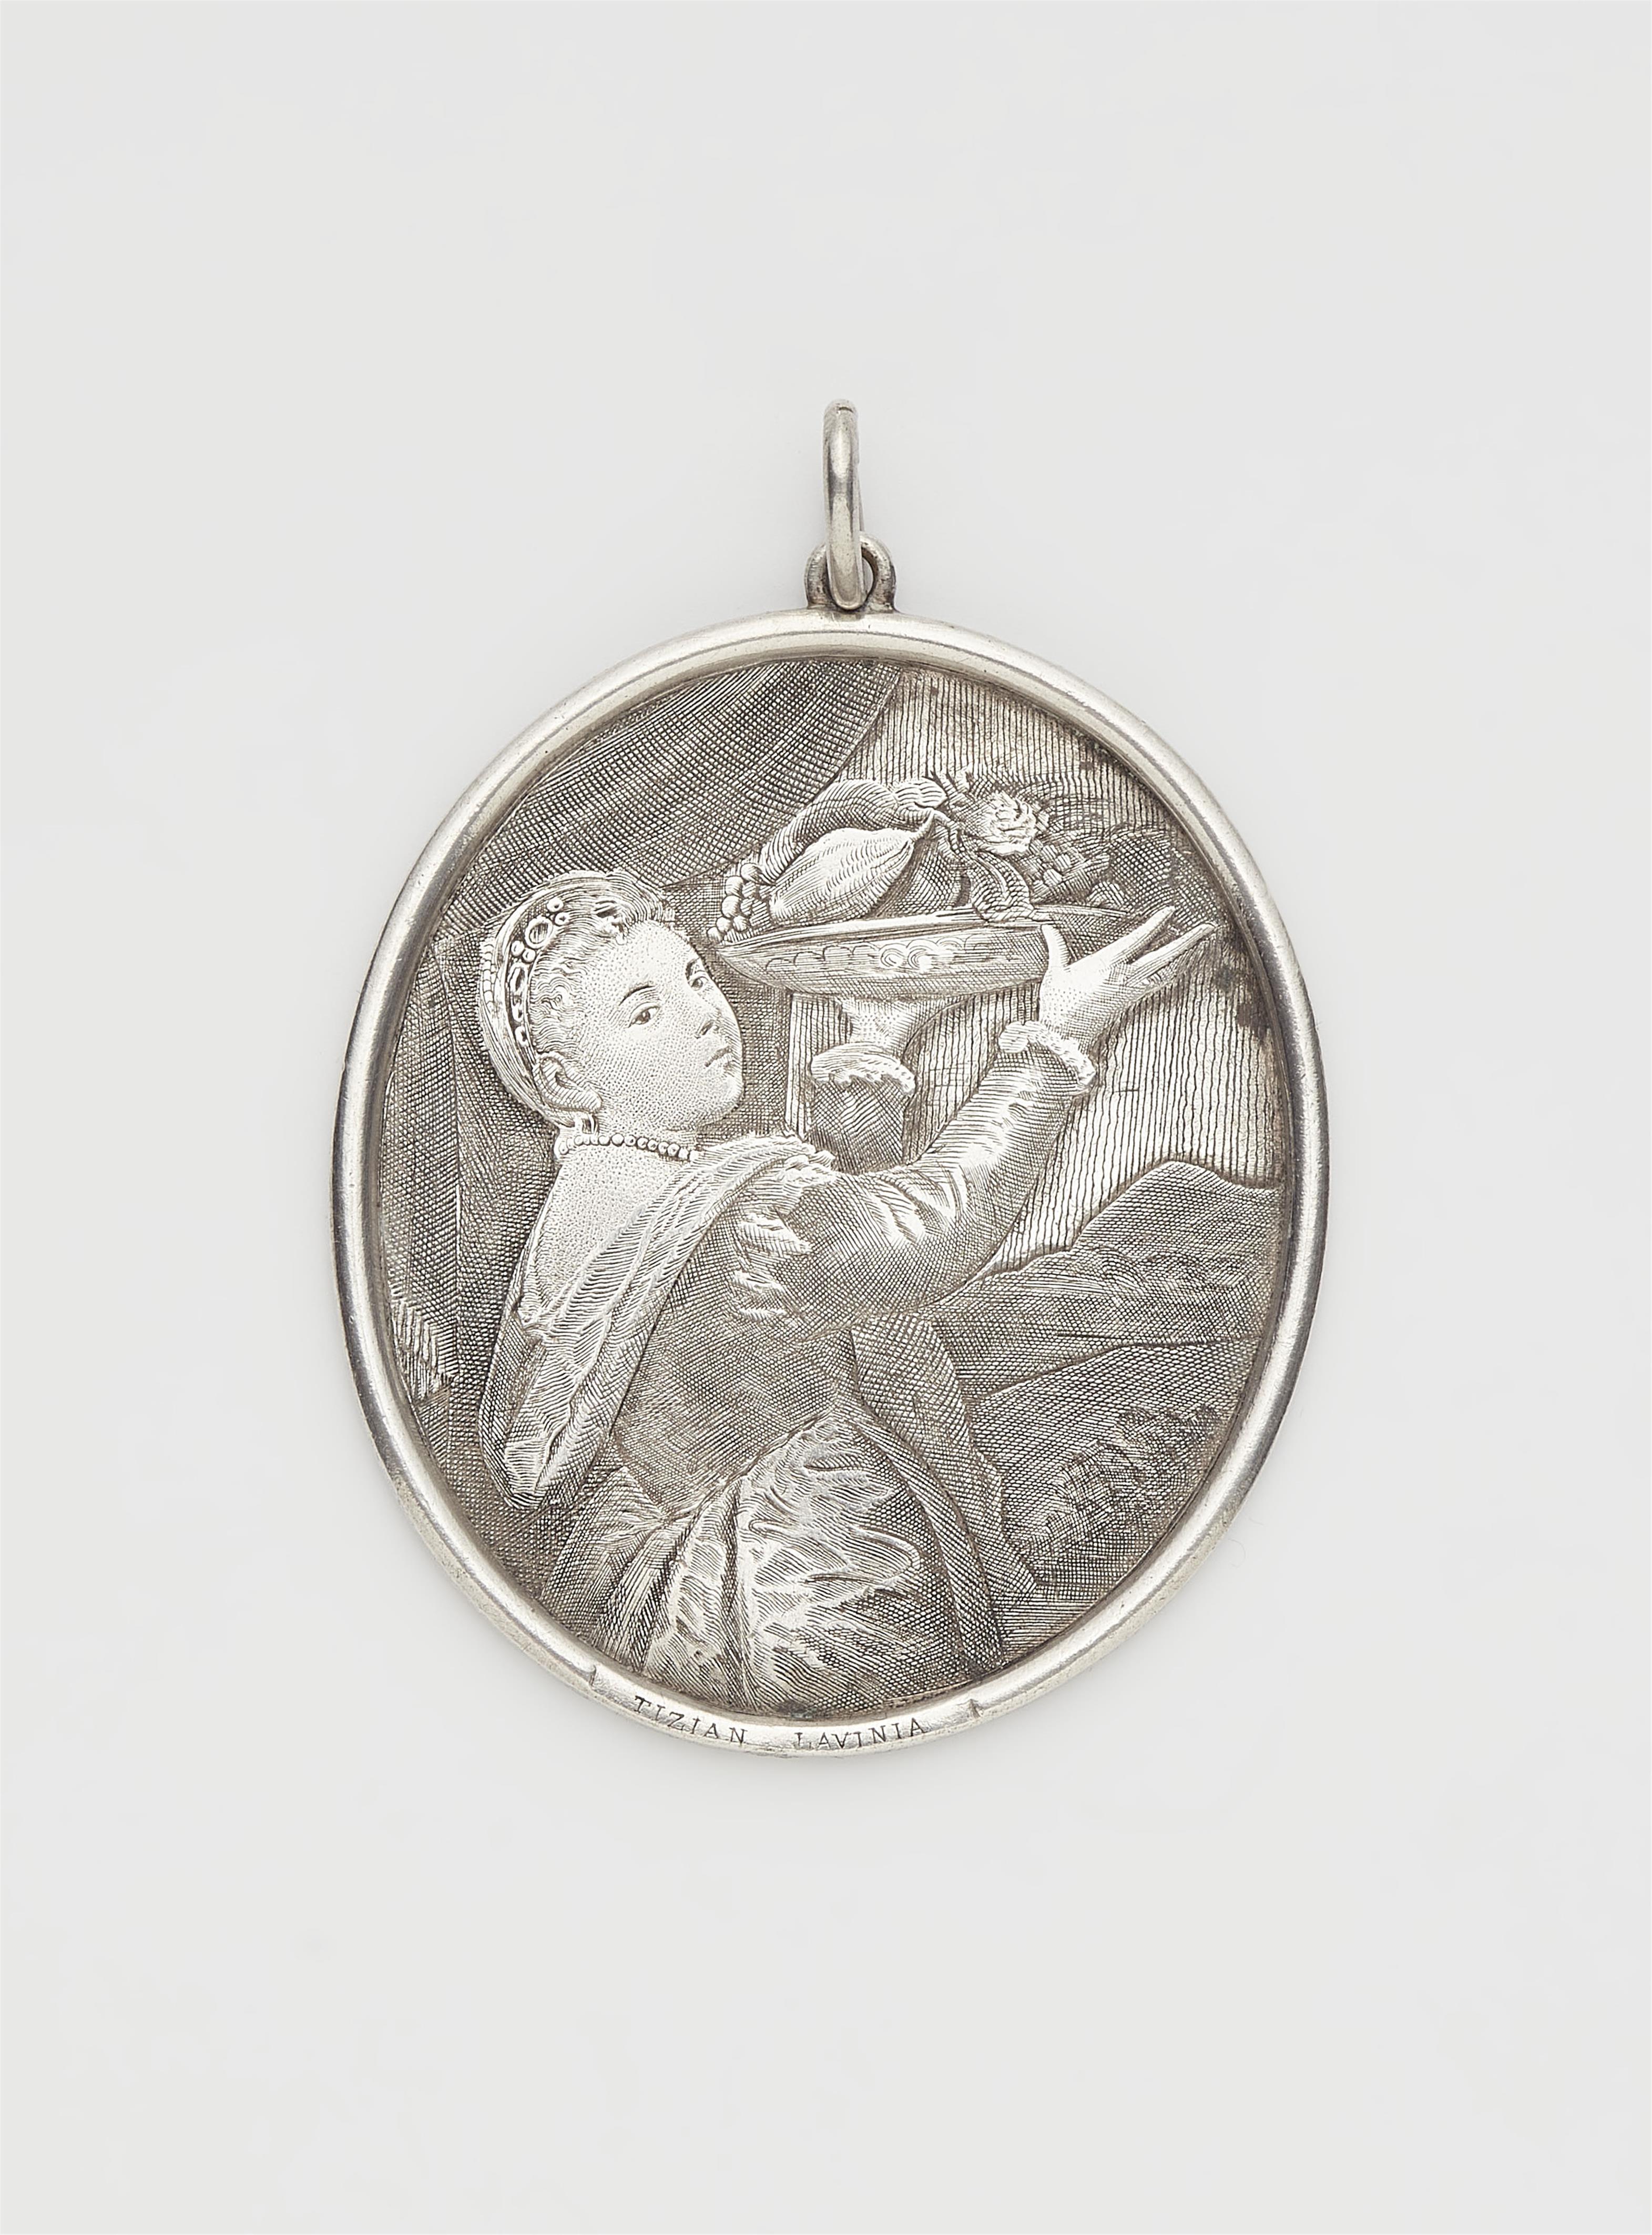 Niederländische Medaille - image-1